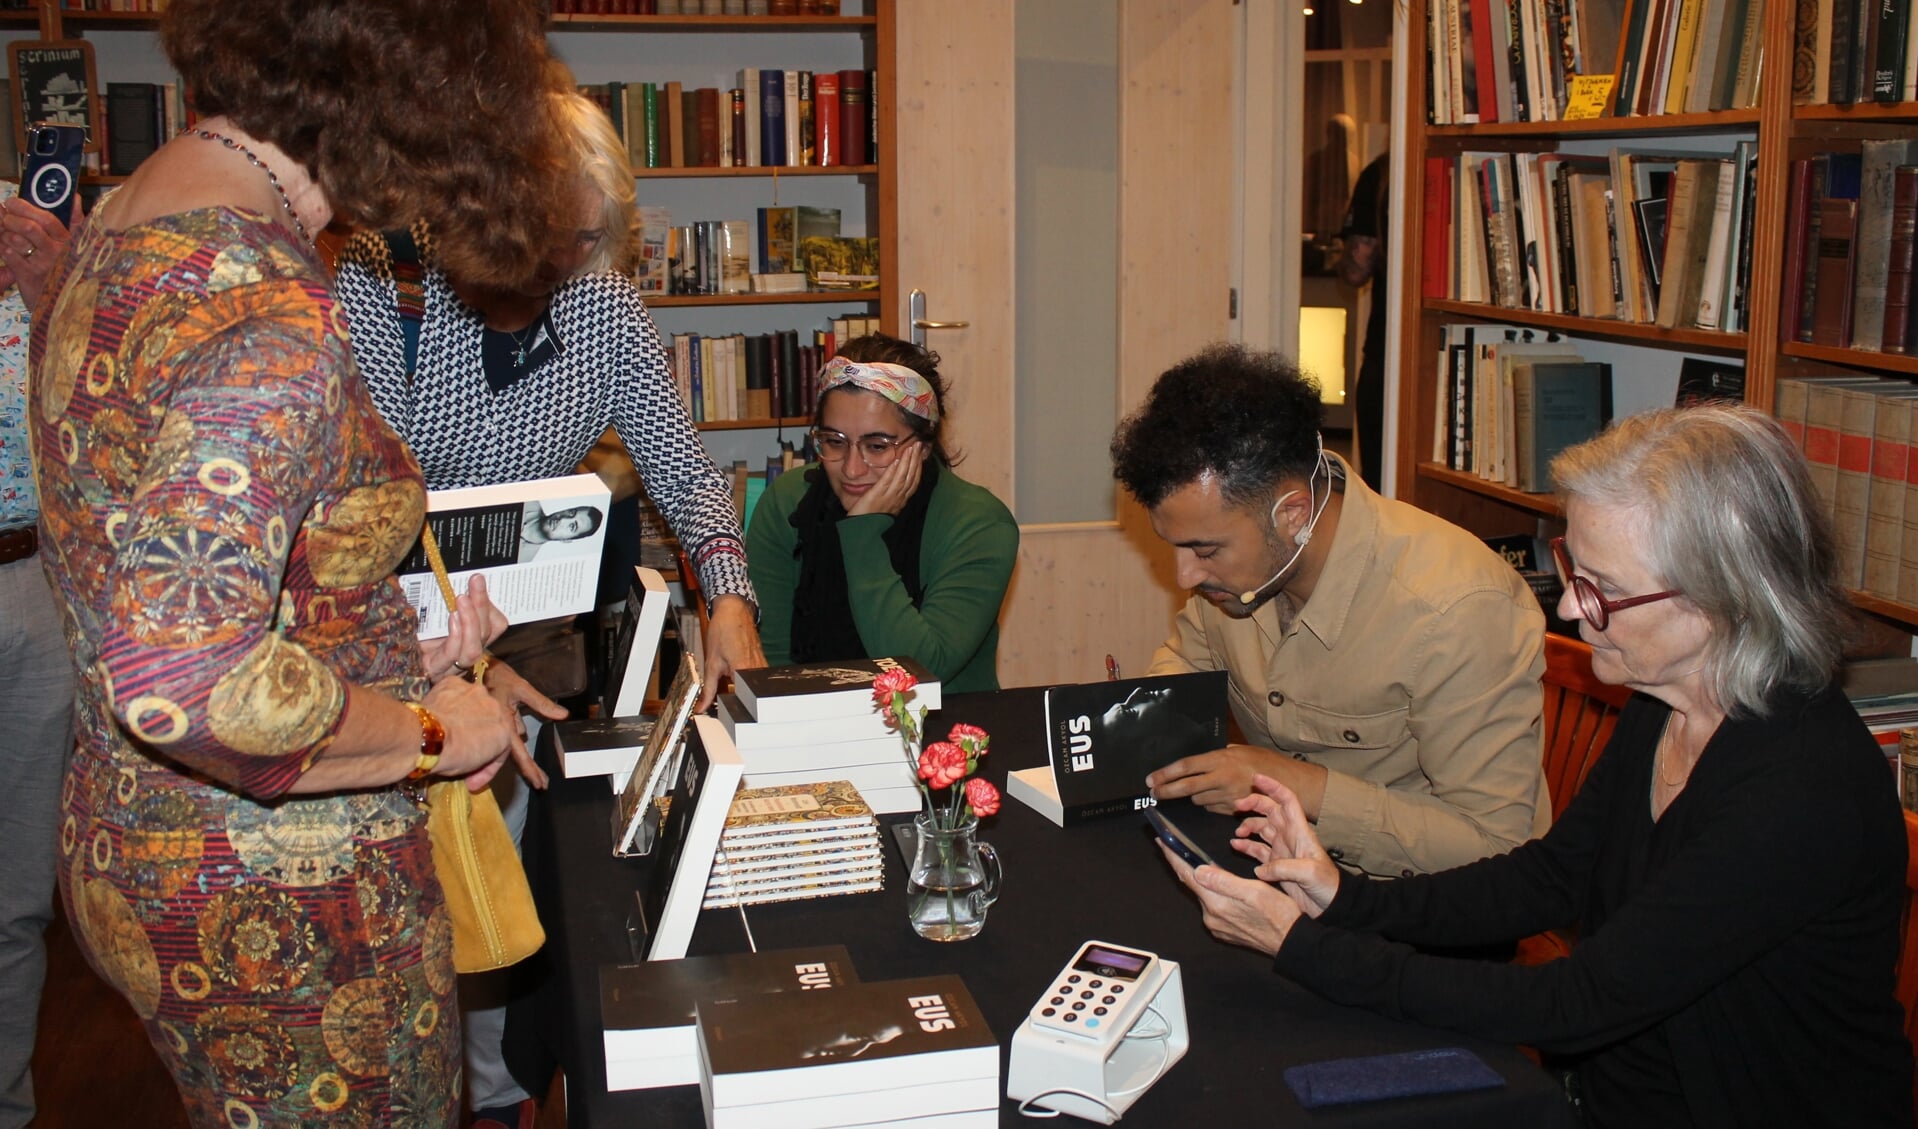 Ozcan Akyol signeert zijn boeken. Foto: Leo van der Linde